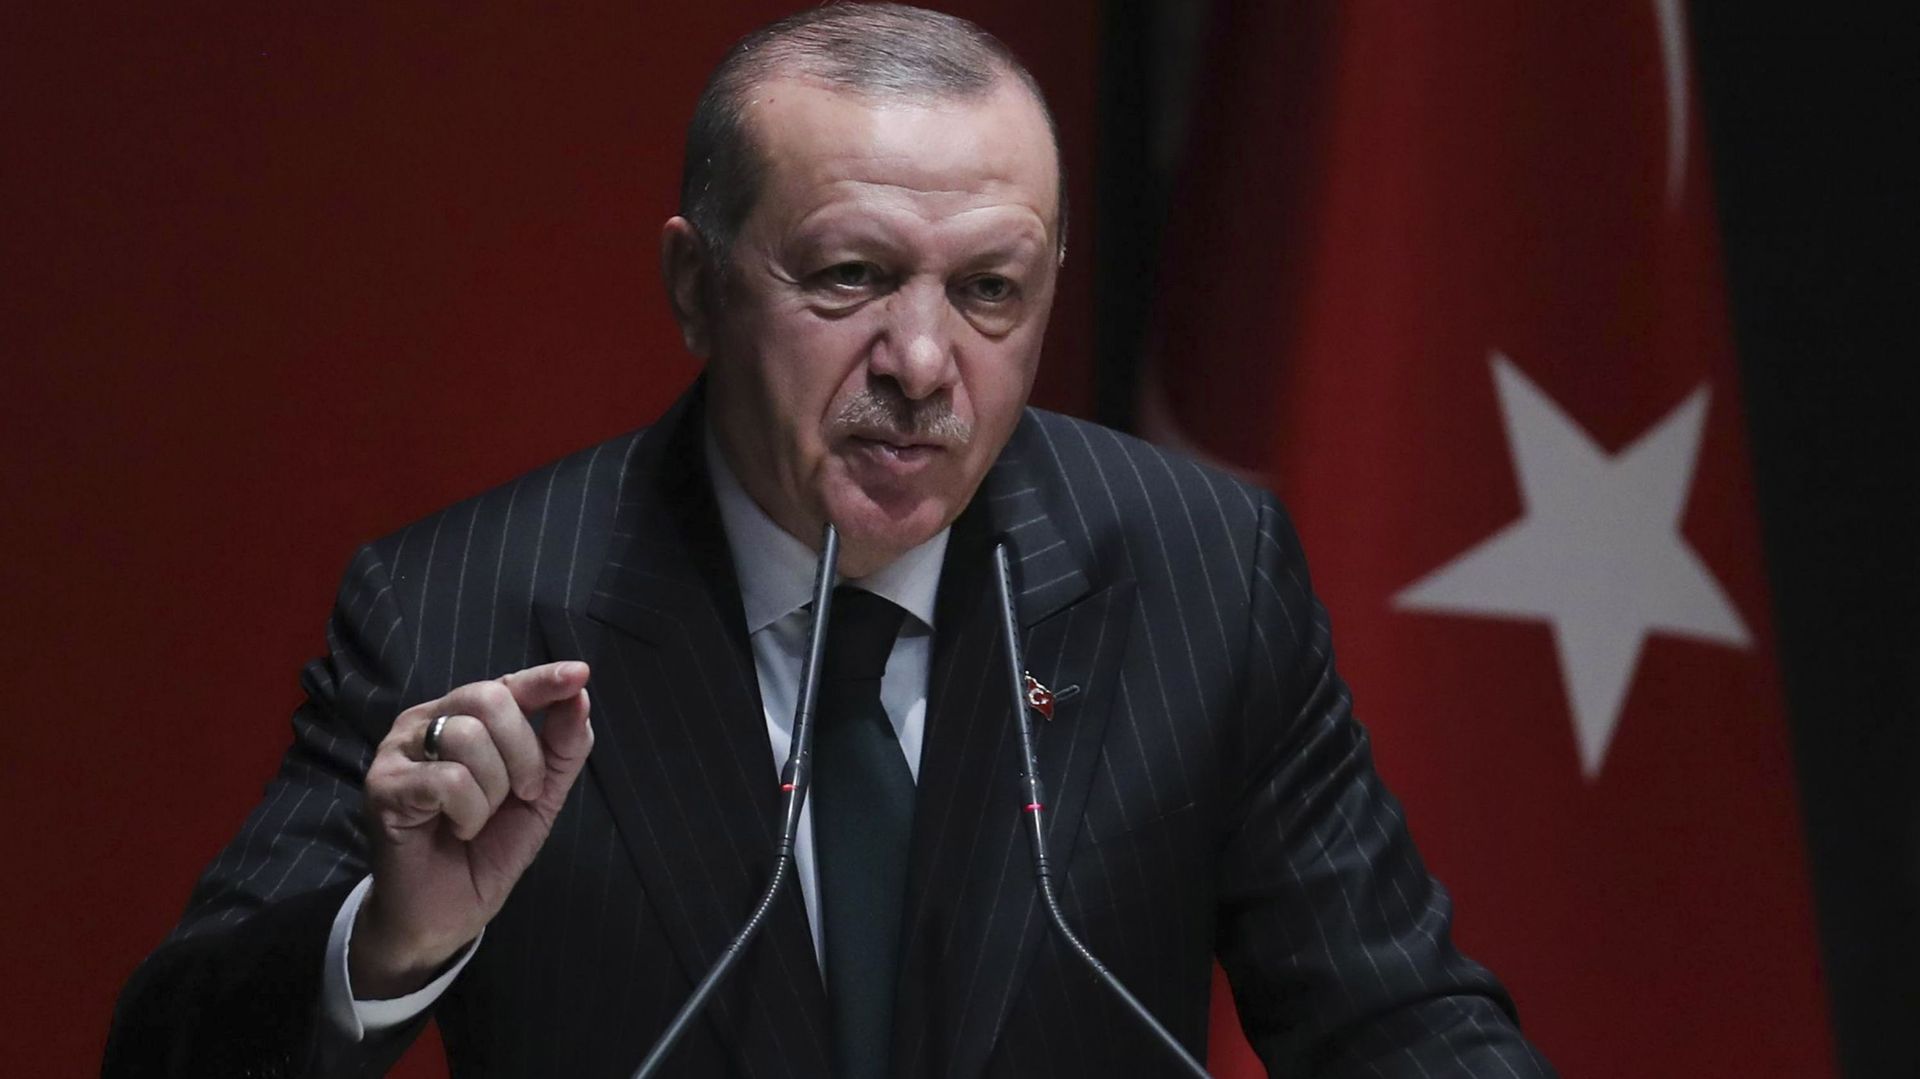 Le président turc a déclaré qu'il suivait la il suivait la situation "avec préoccupation"